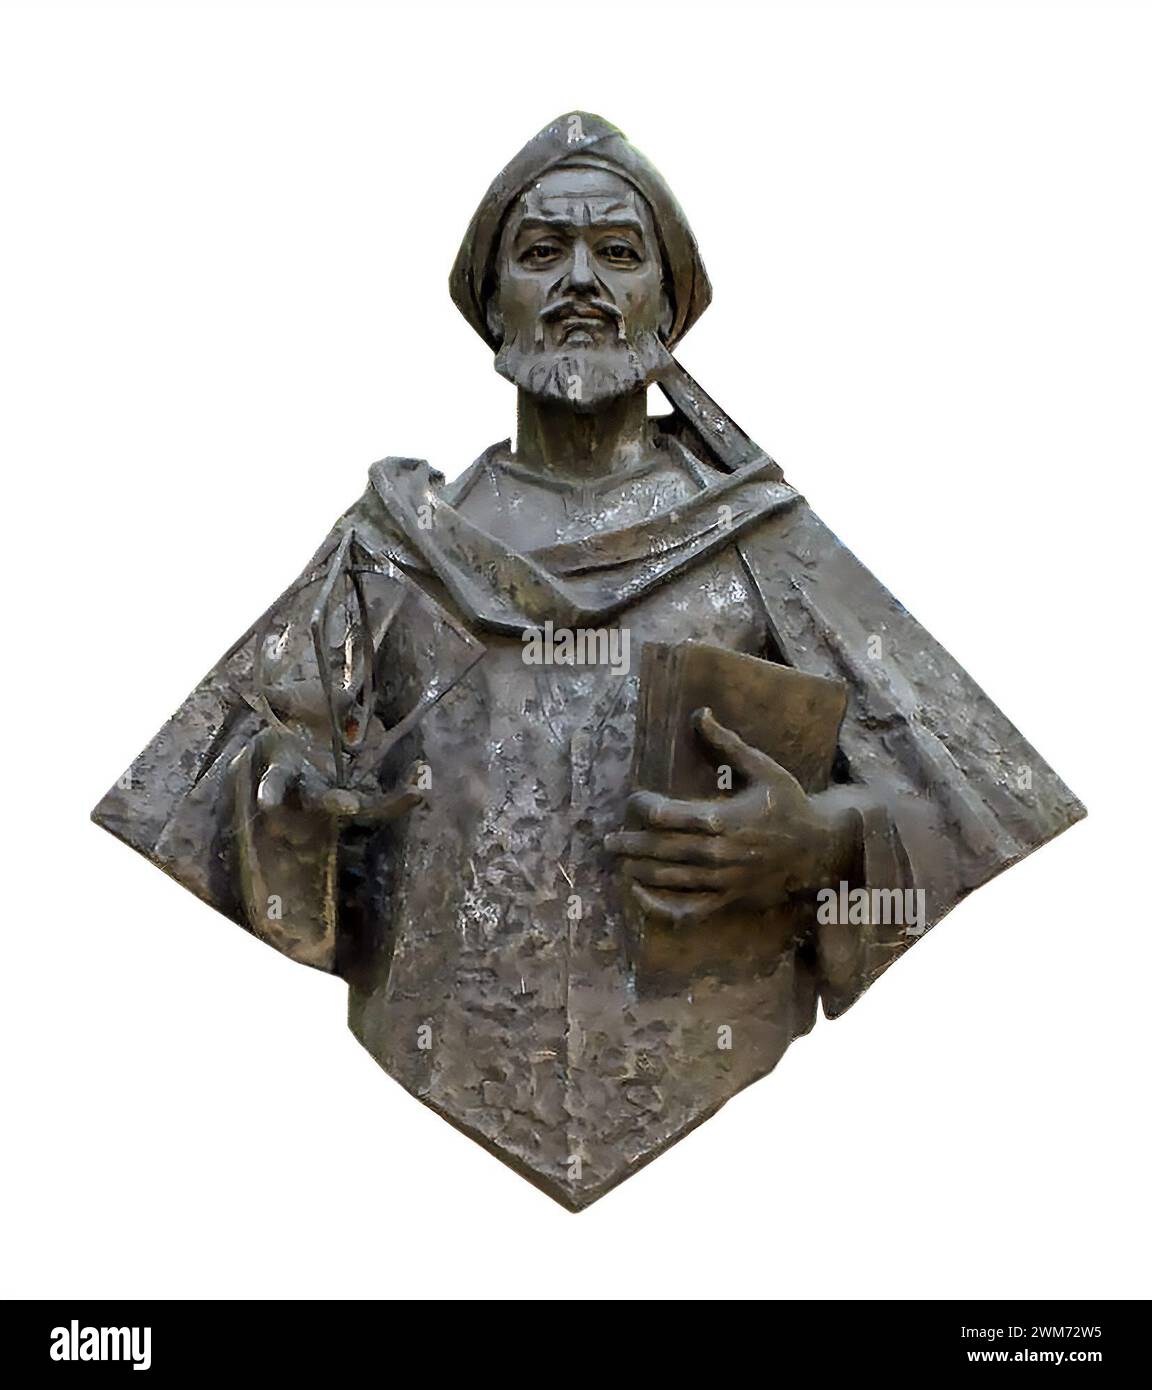 Al-Khwarizmi. Busto del polemico persiano, Muhammad ibn Musa al-Khwarizmi (c. 780-850) presso la Ciudad Universitaria di Madrid. Foto Stock